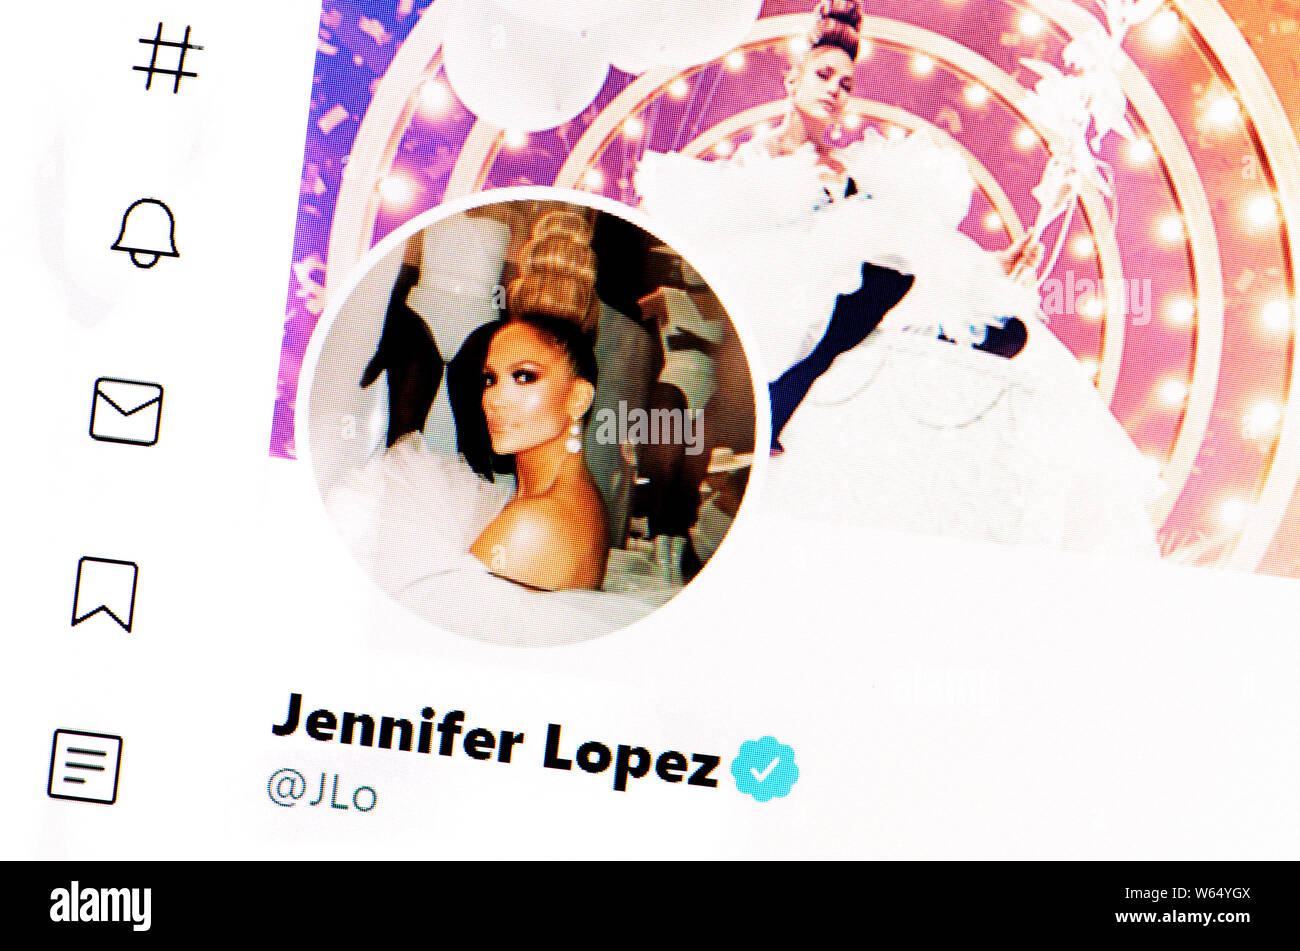 Twitter Seite (Juli 2019) Jenifer Lopez - amerikanische Sängerin und Schauspielerin Stockfoto